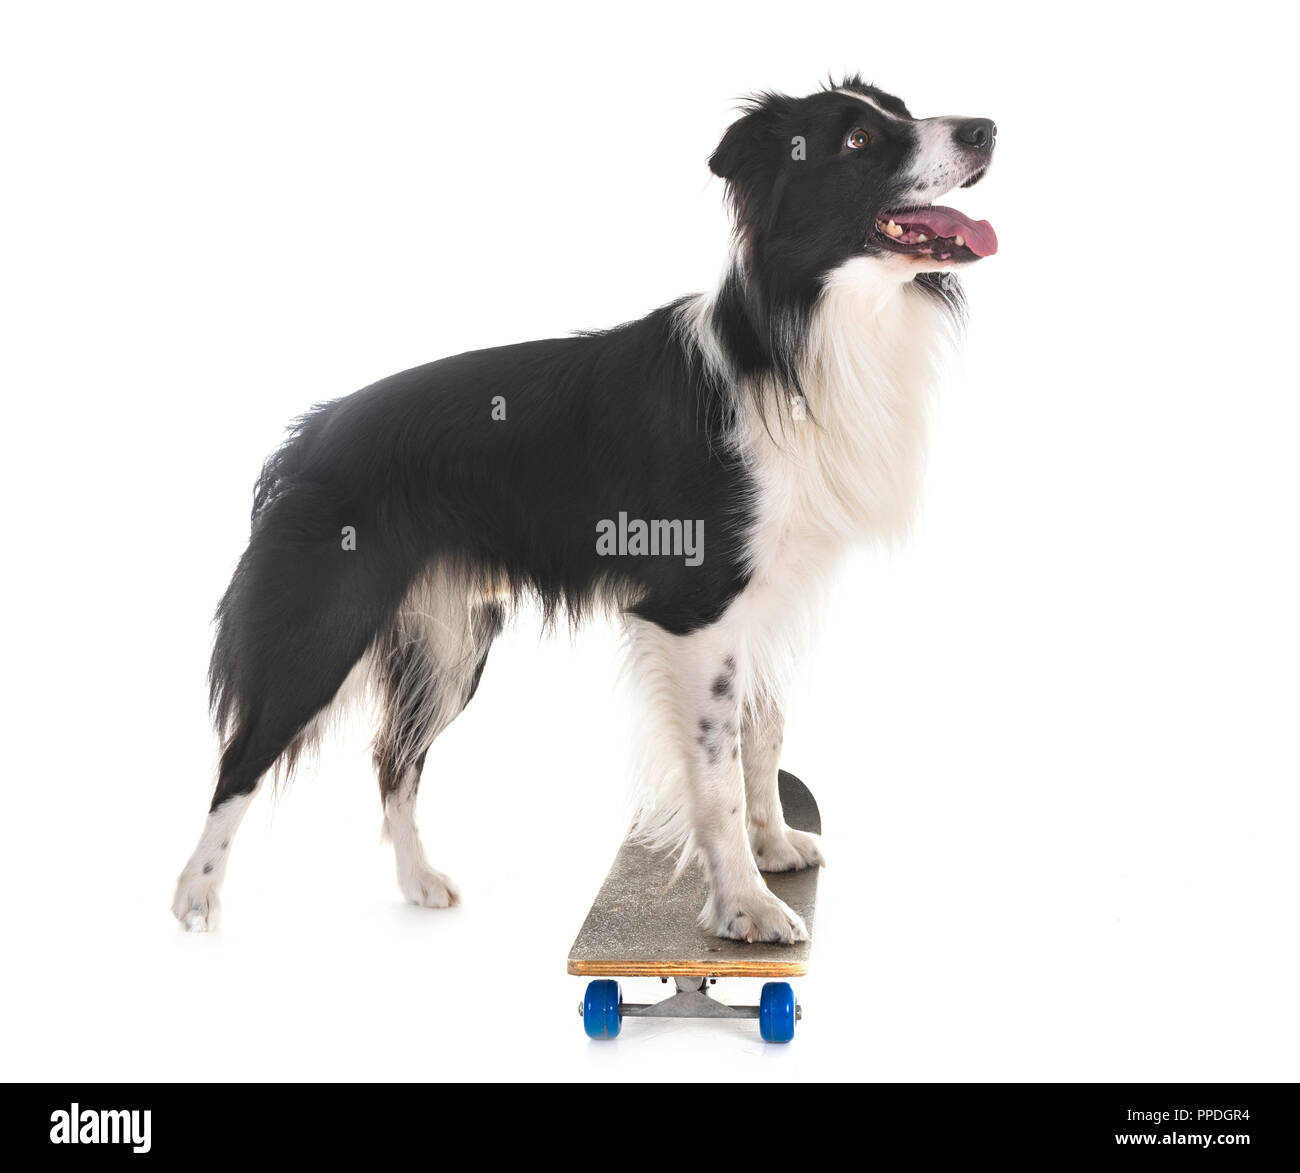 Dog skateboard Banque d'images détourées - Page 2 - Alamy